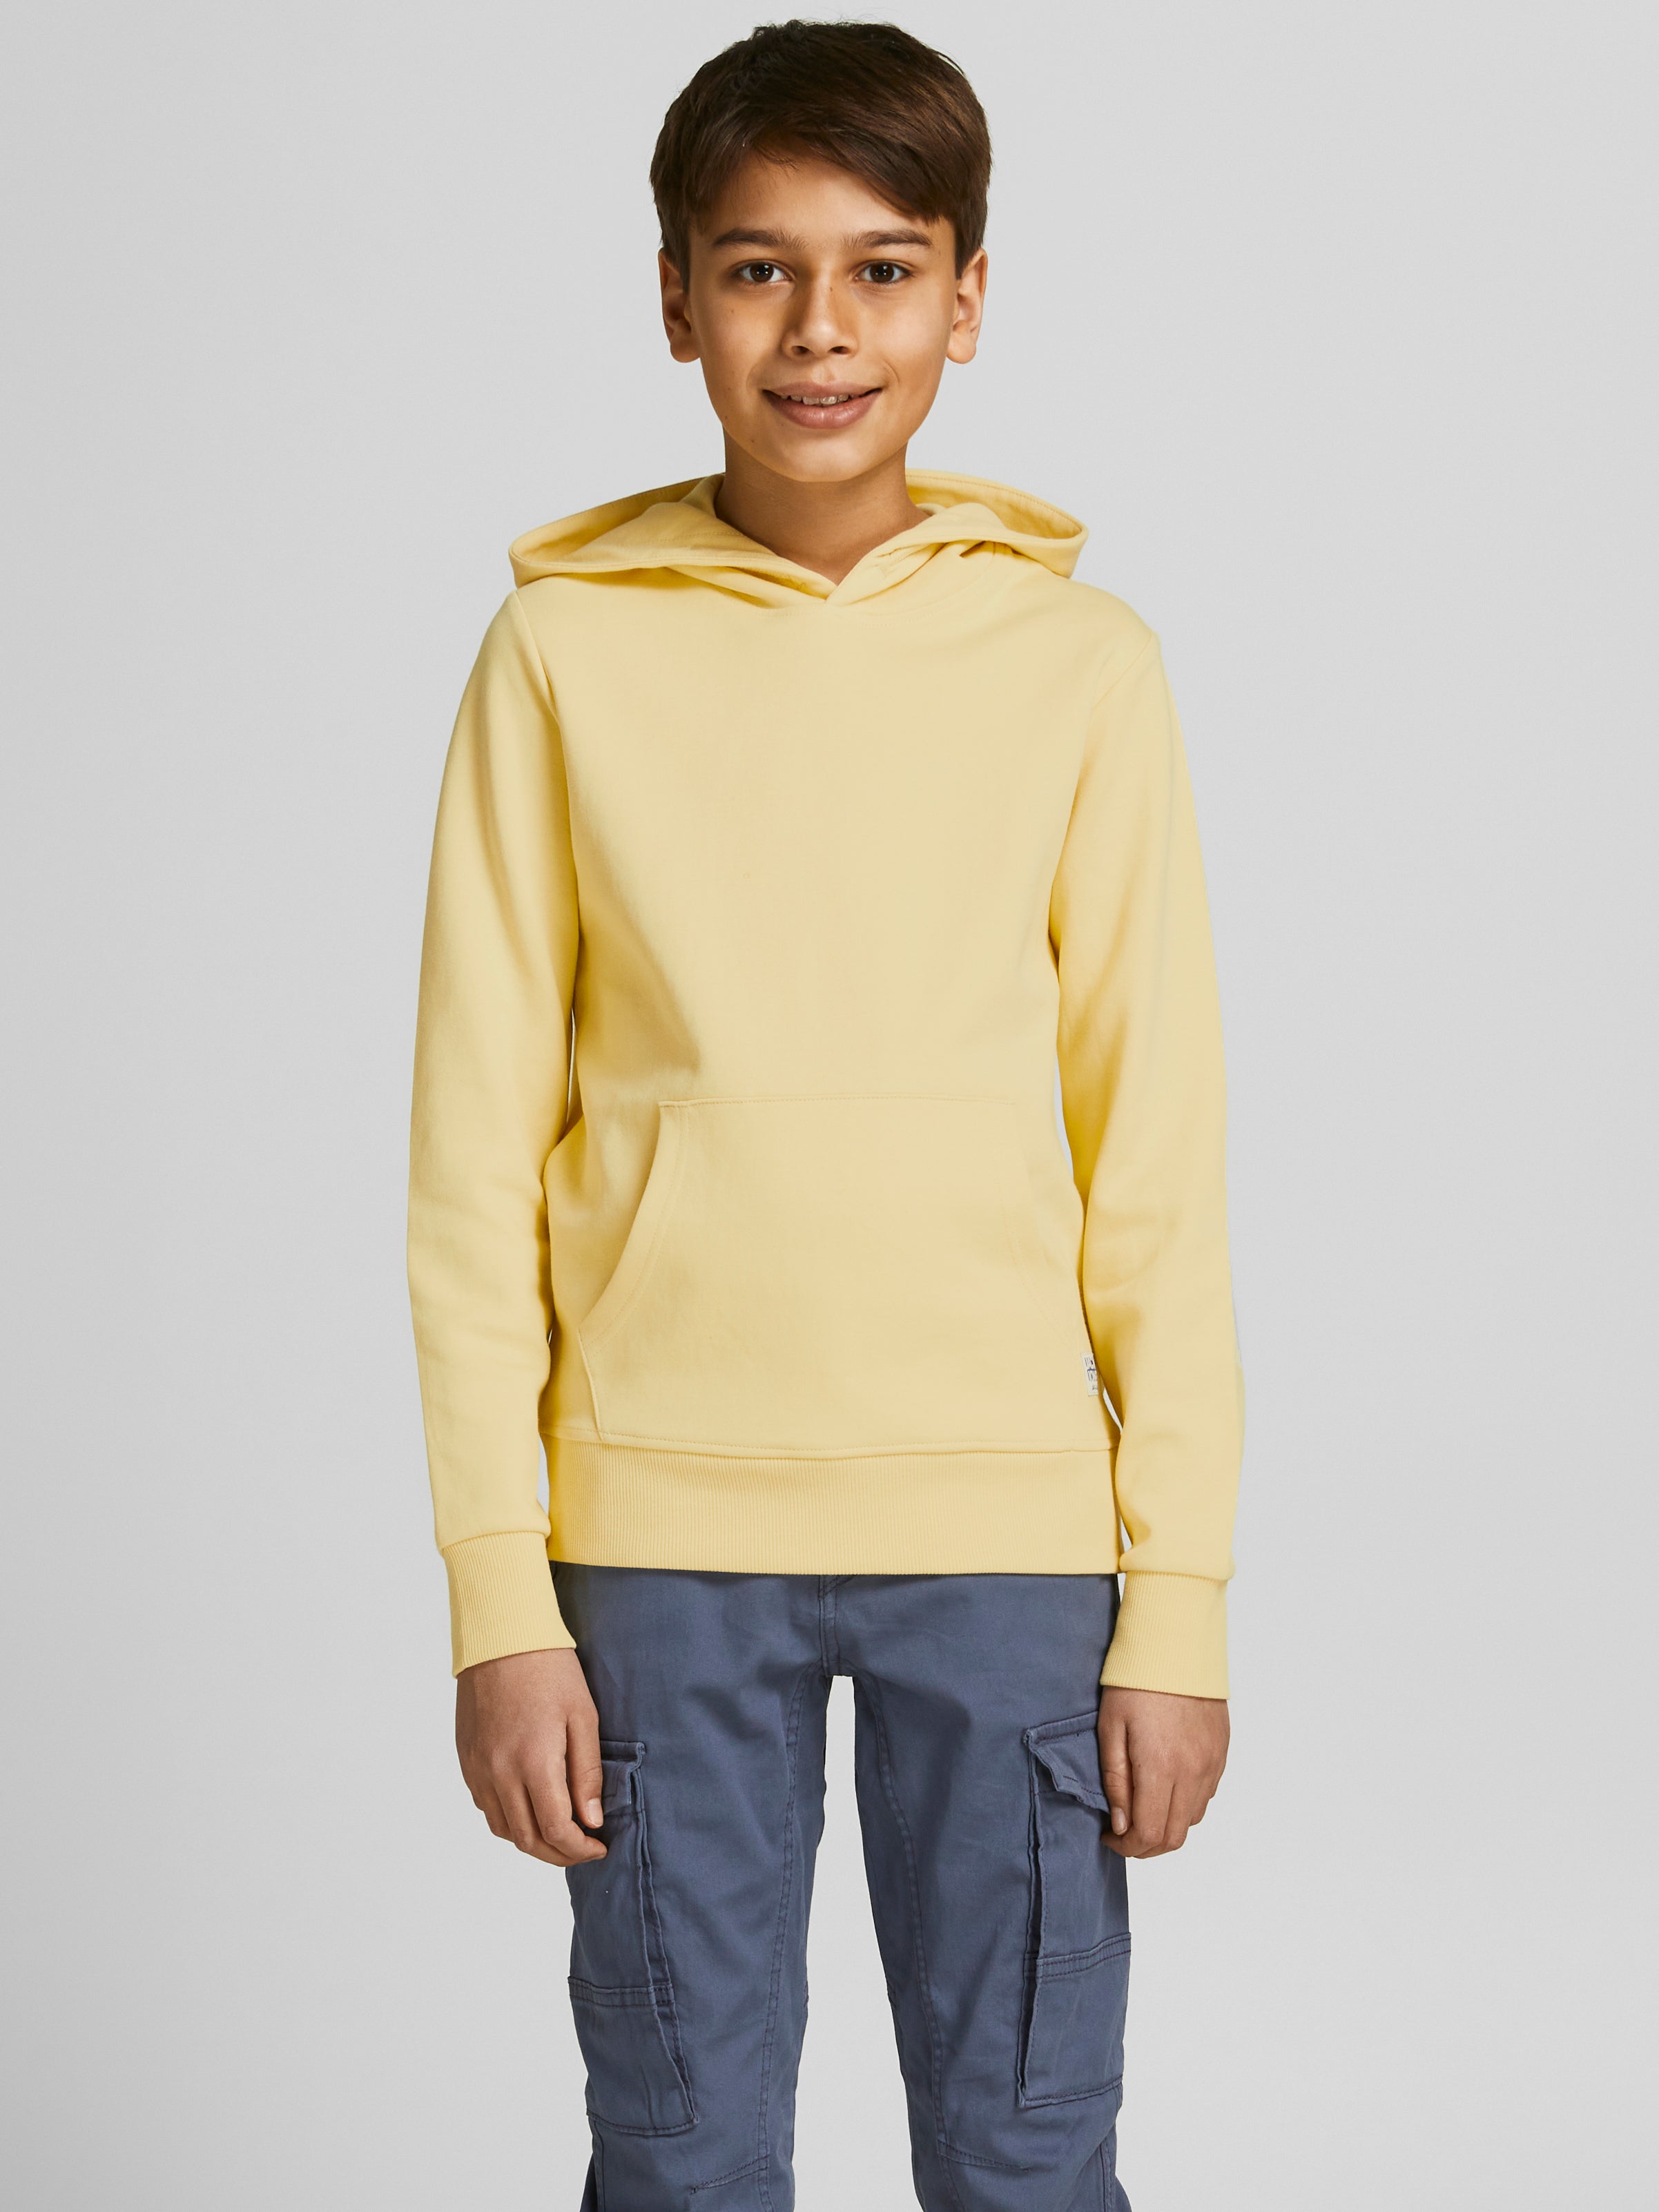 Mercedes Benz Gildan Hoodie Pullover Sweatshirt Pullover Kleding Jongenskleding Babykleding voor jongens Hoodies & Sweatshirts 